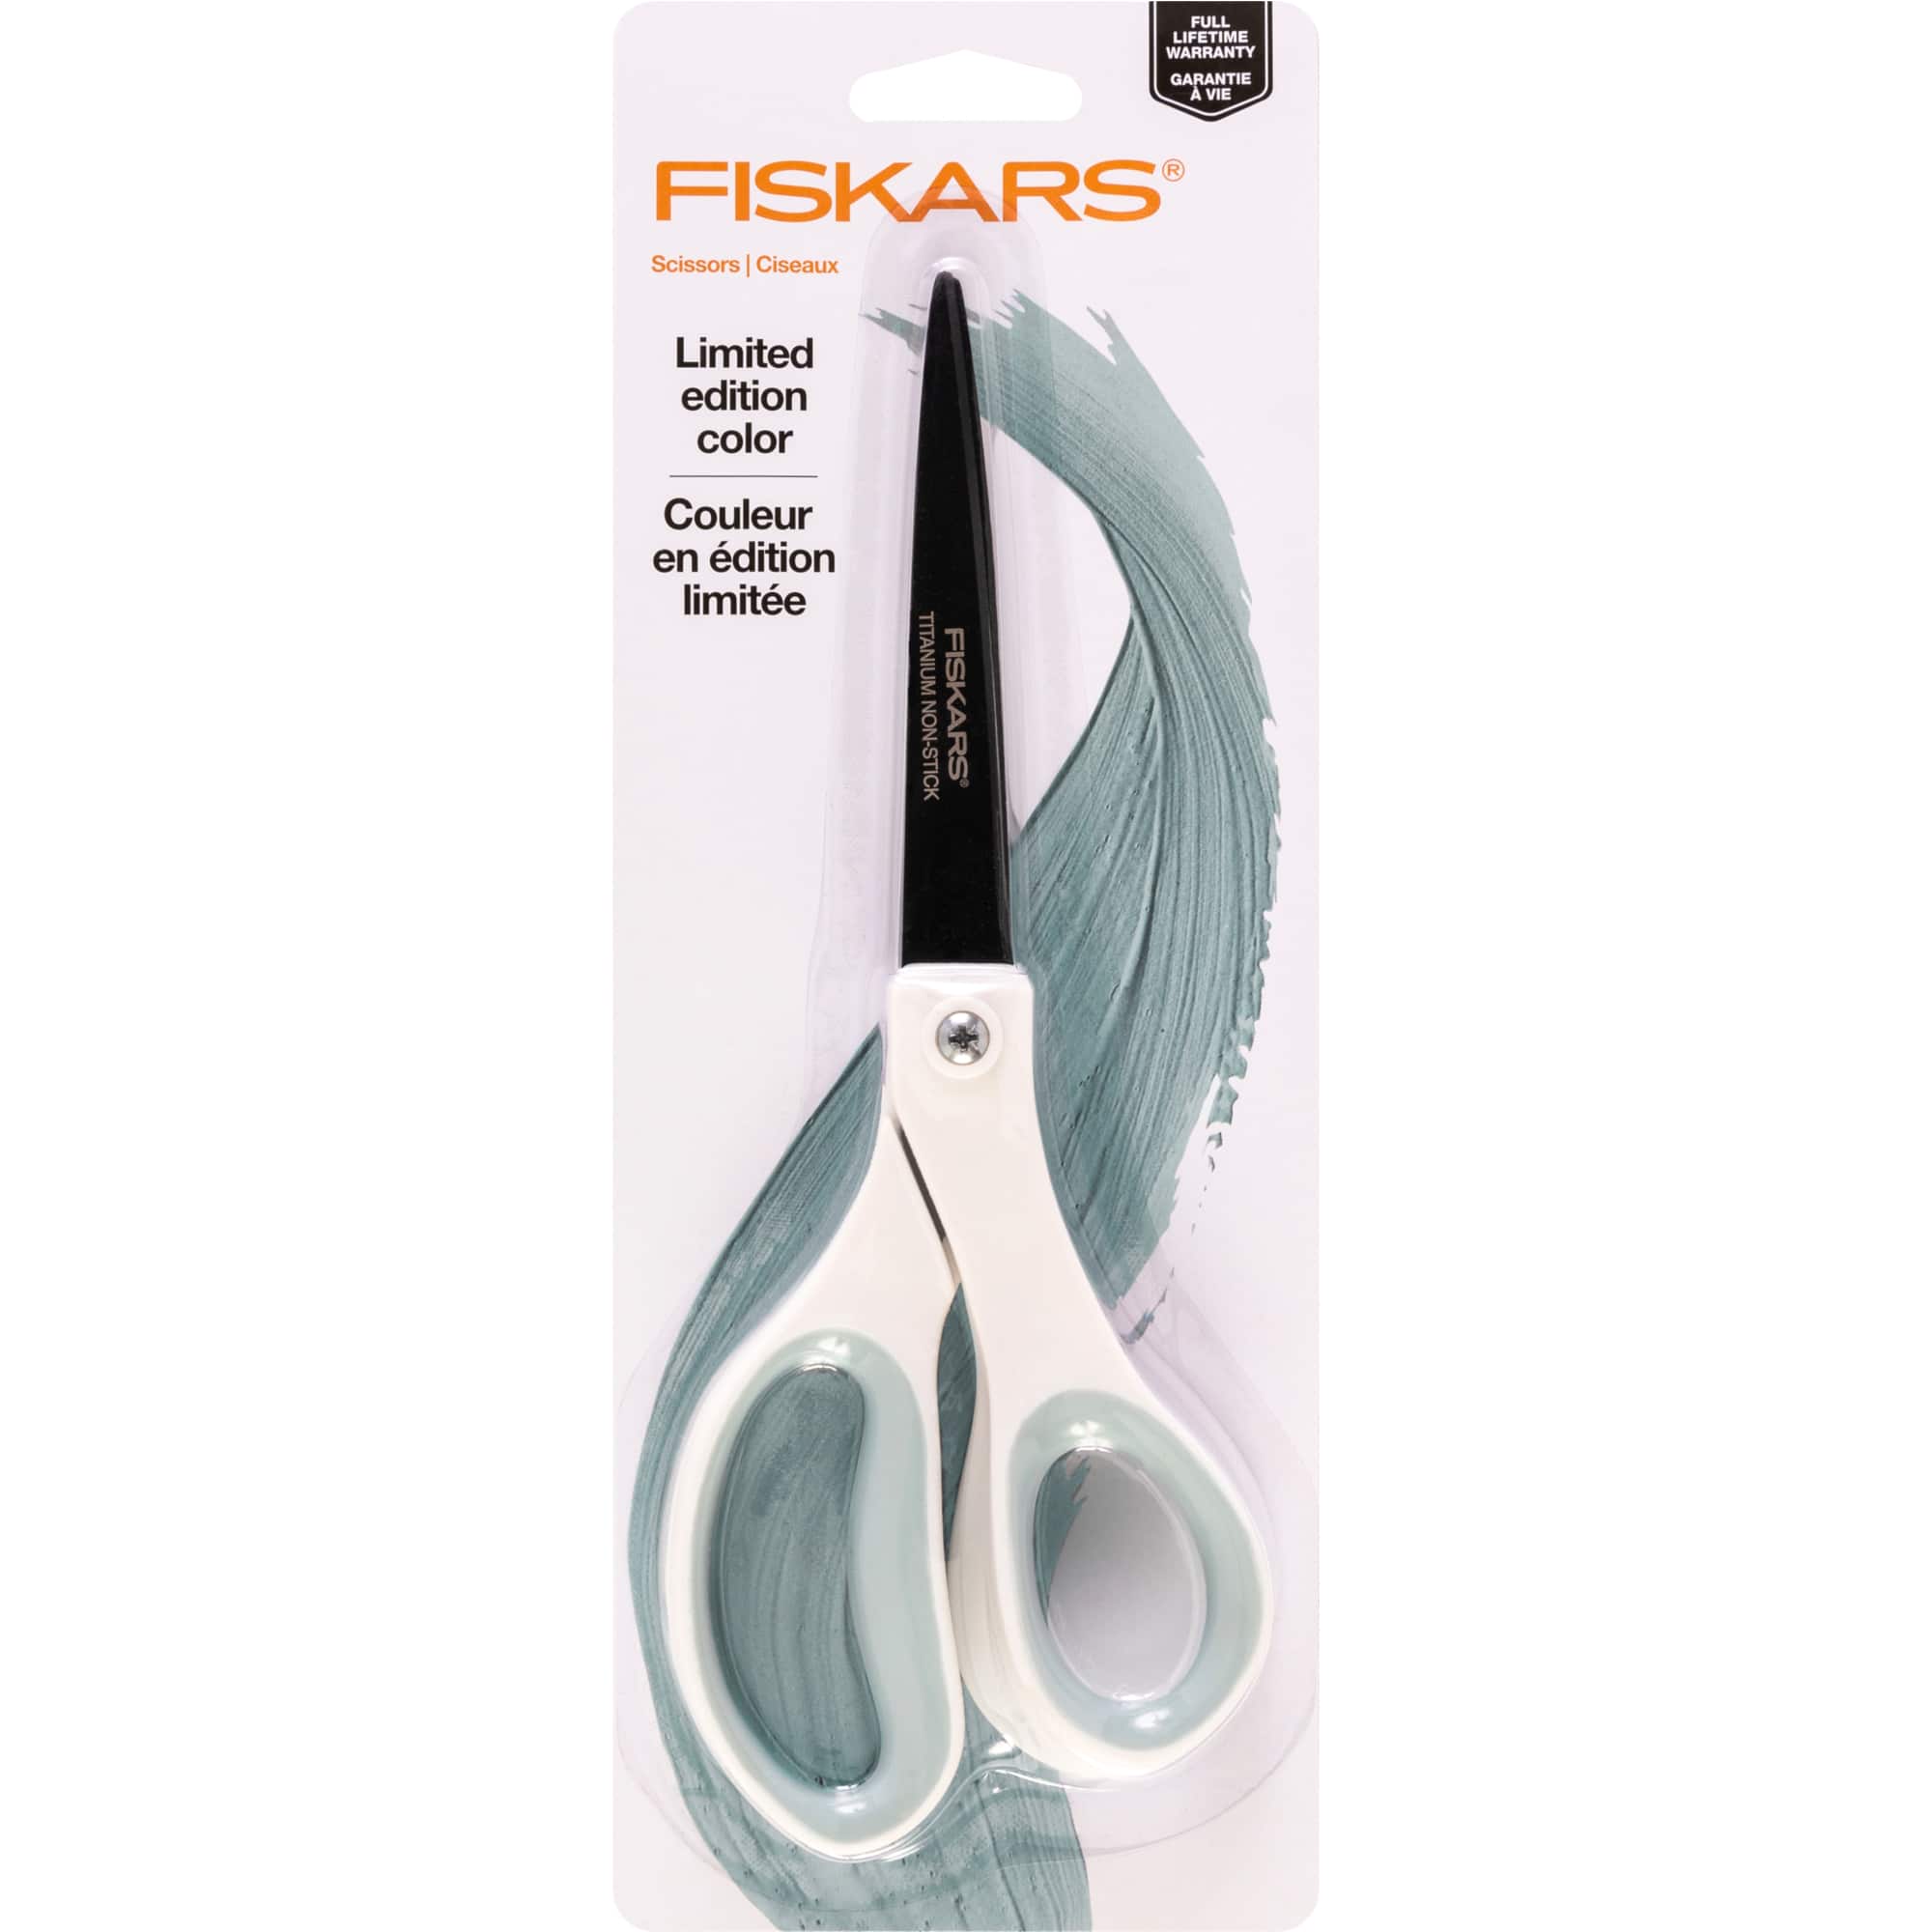 Fiskars 3pc Titanium Scissors Set Navy